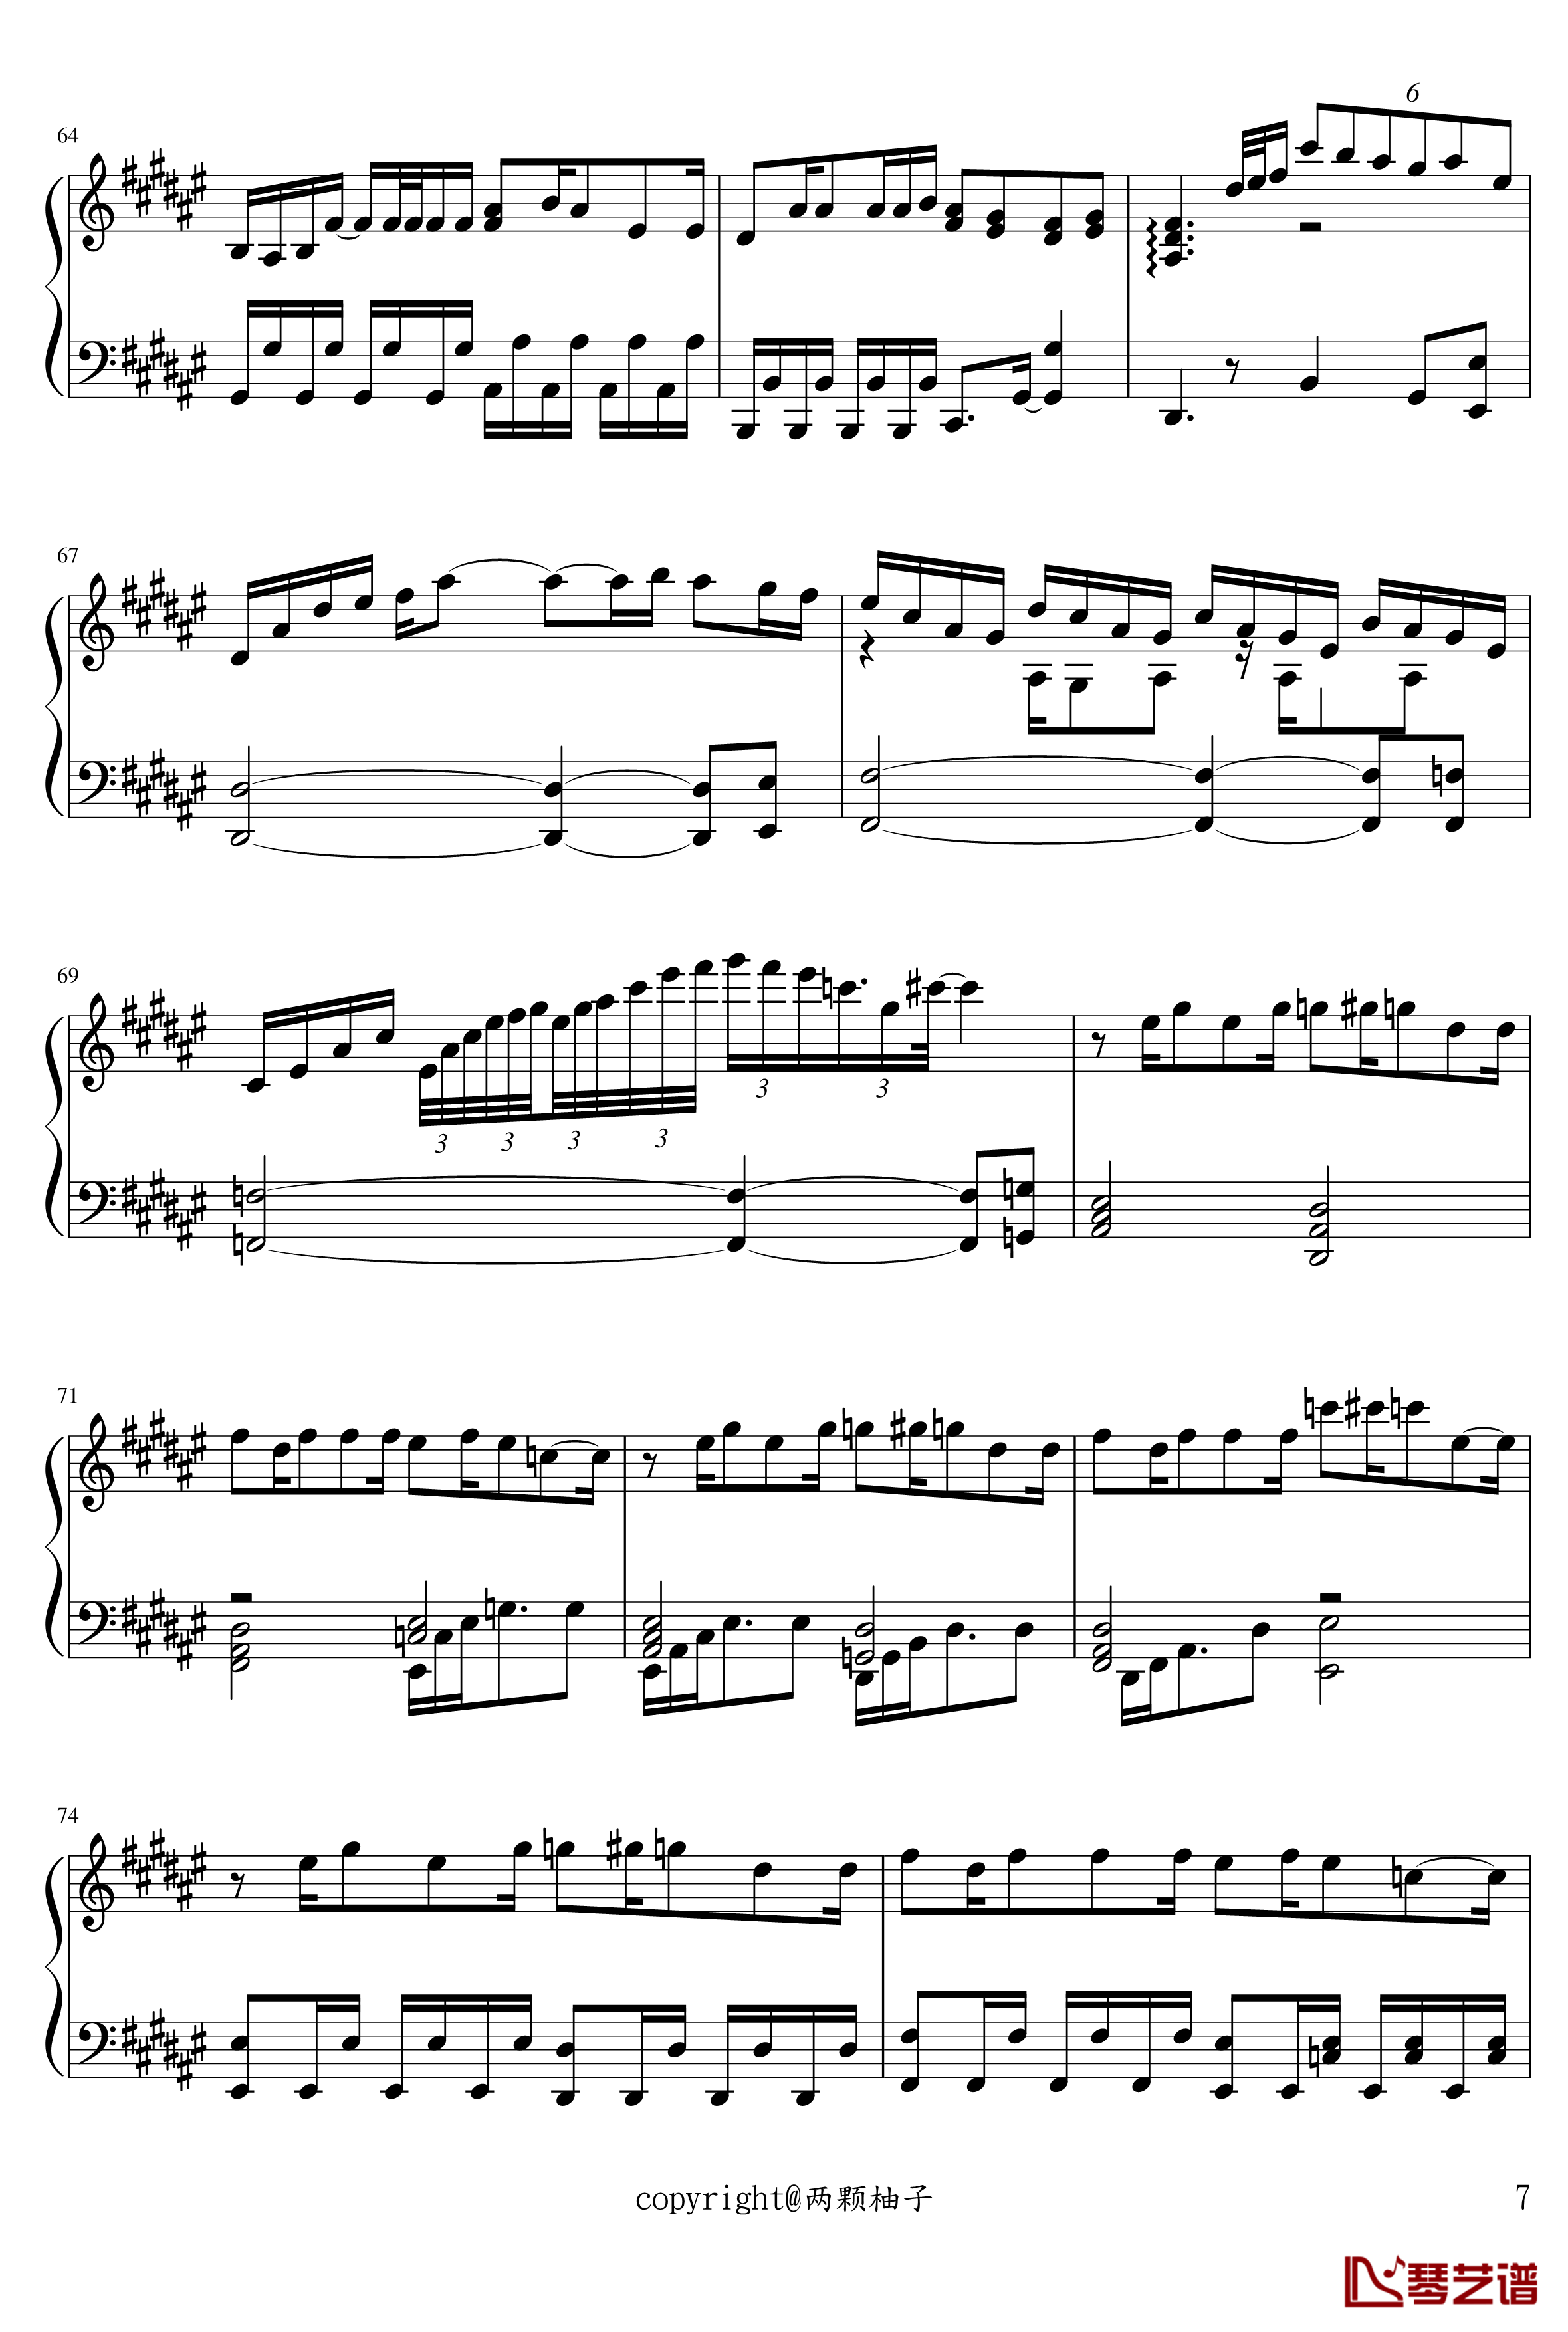 ロミオとシンデレラ钢琴谱-初音-初音未来7